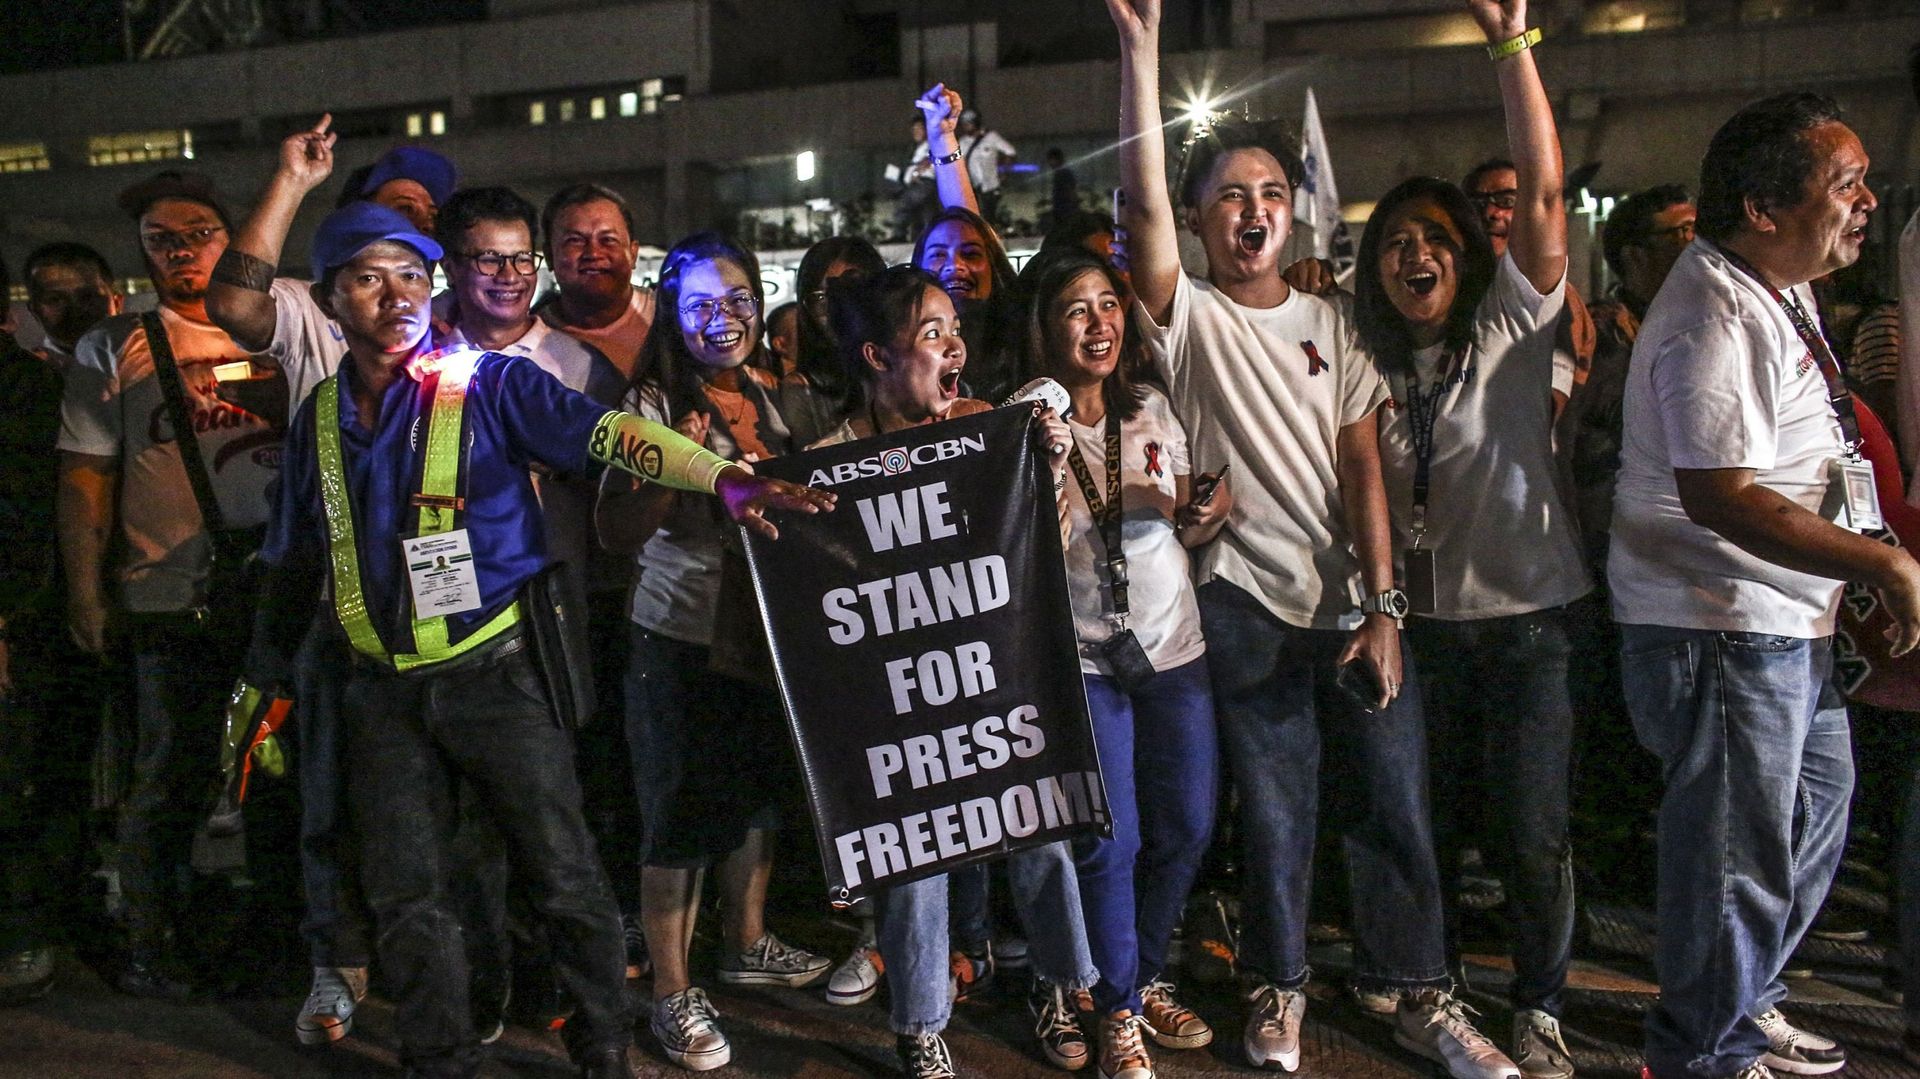 Des partisans et des employés d’ABS-CBN, le plus grand réseau de diffusion du pays, lors d’une manifestation devant le bâtiment d’ABS-CBN à Manille, le 21 février 2020.